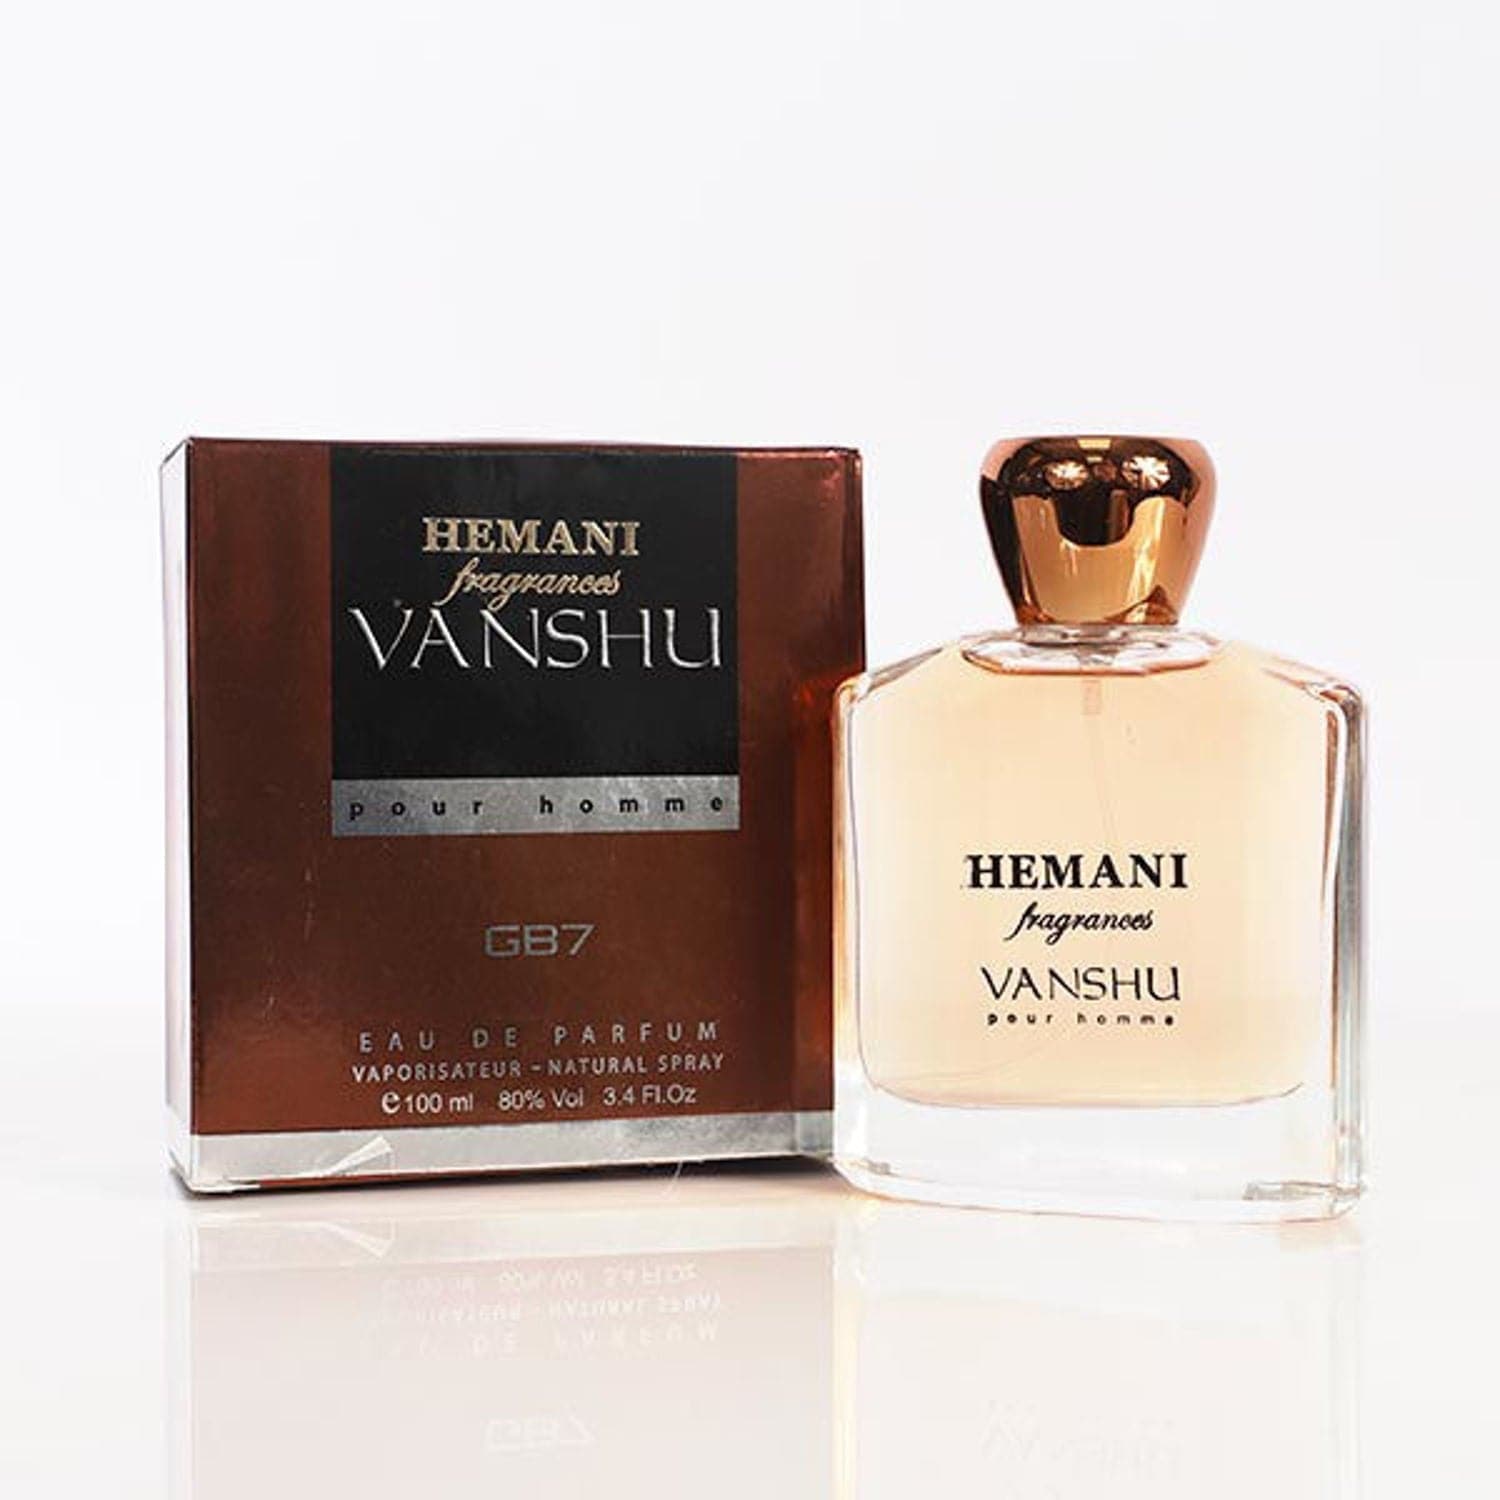 Hemani Vanshu Perfume 100Ml - Premium  from Hemani - Just Rs 900.00! Shop now at Cozmetica